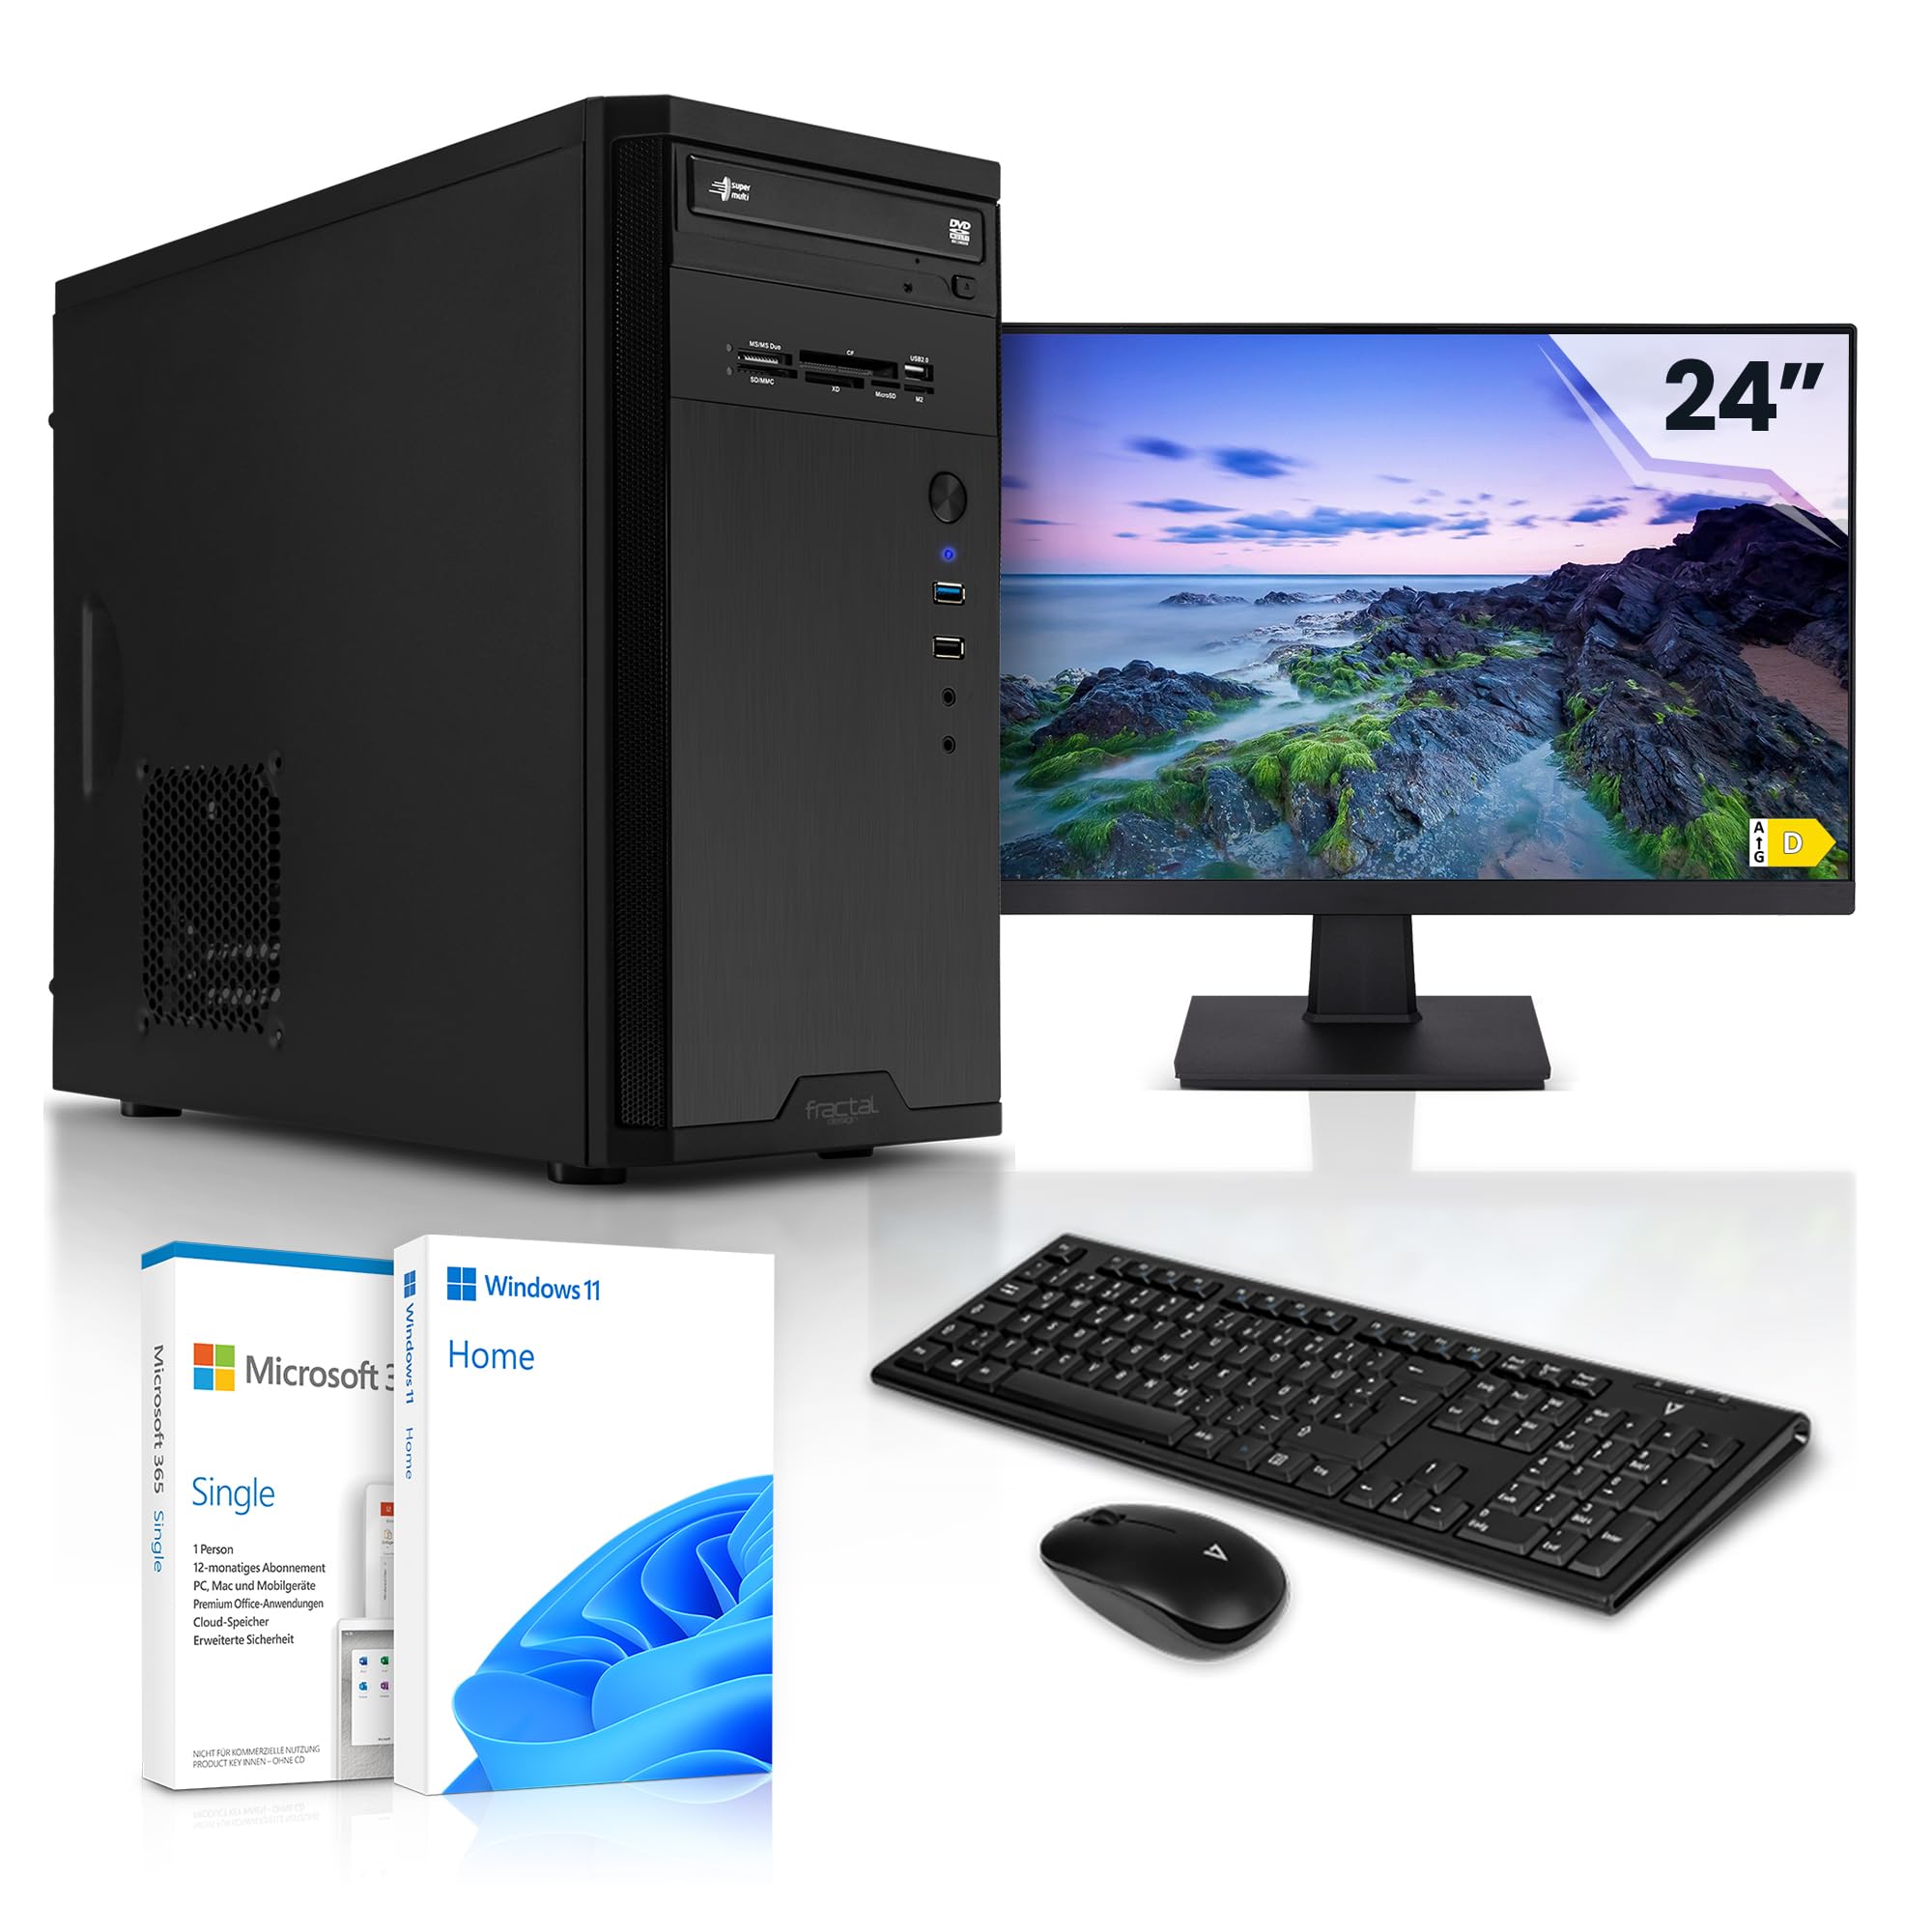 Megaport Komplett Home Office PC Smart Intel Core i7 10700 8x4.80GHz • 24" Monitor • Windows 11 • Intel UHD 630 • 32GB DDR4 • 1TB M.2 SSD • WLAN • Tastatur Maus Set • Multimedia PC